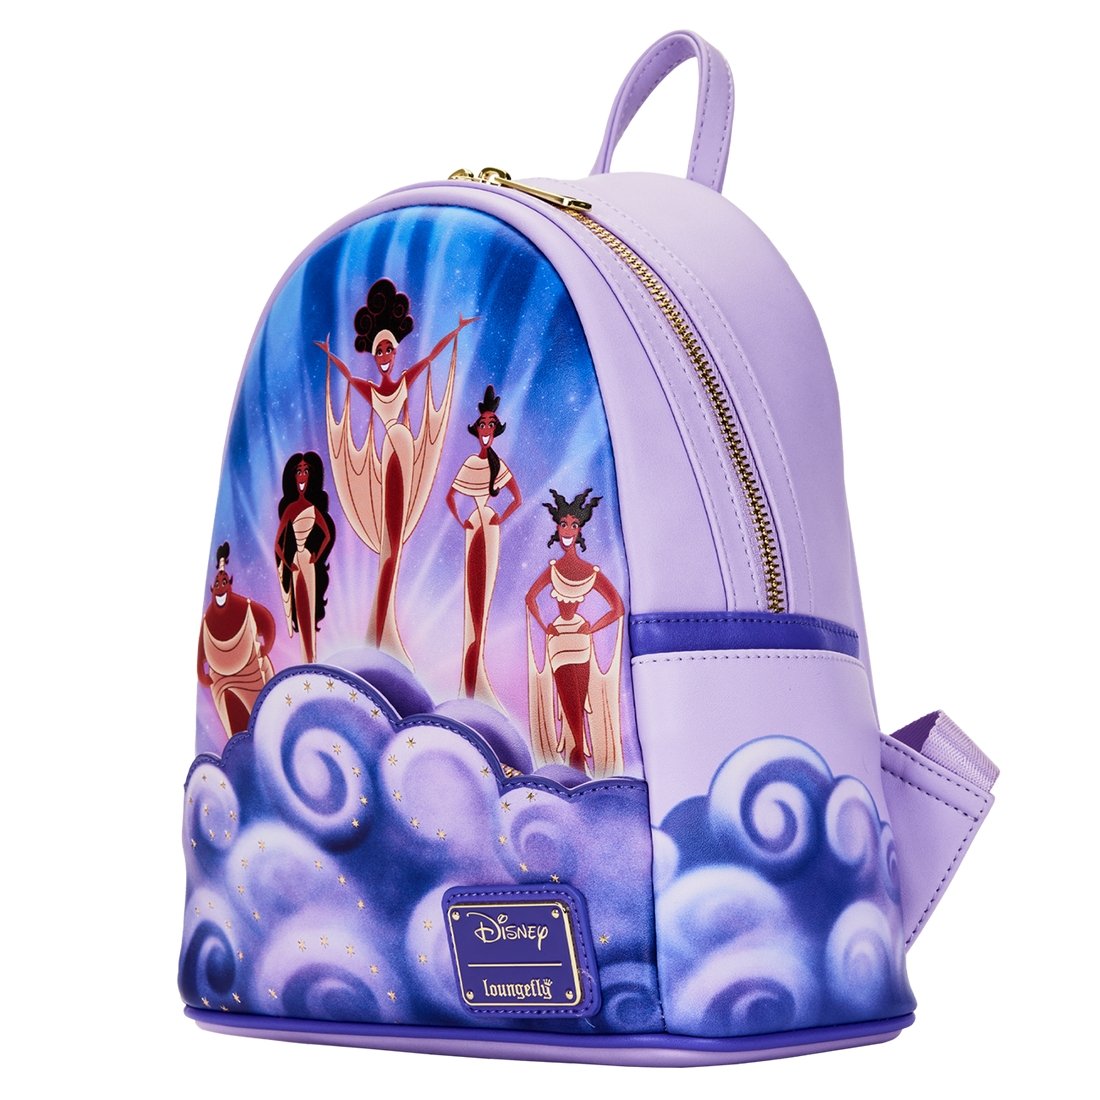 Hercules Muses Cloud Mini Backpack - Rockamilly-Bags & Purses-Vintage